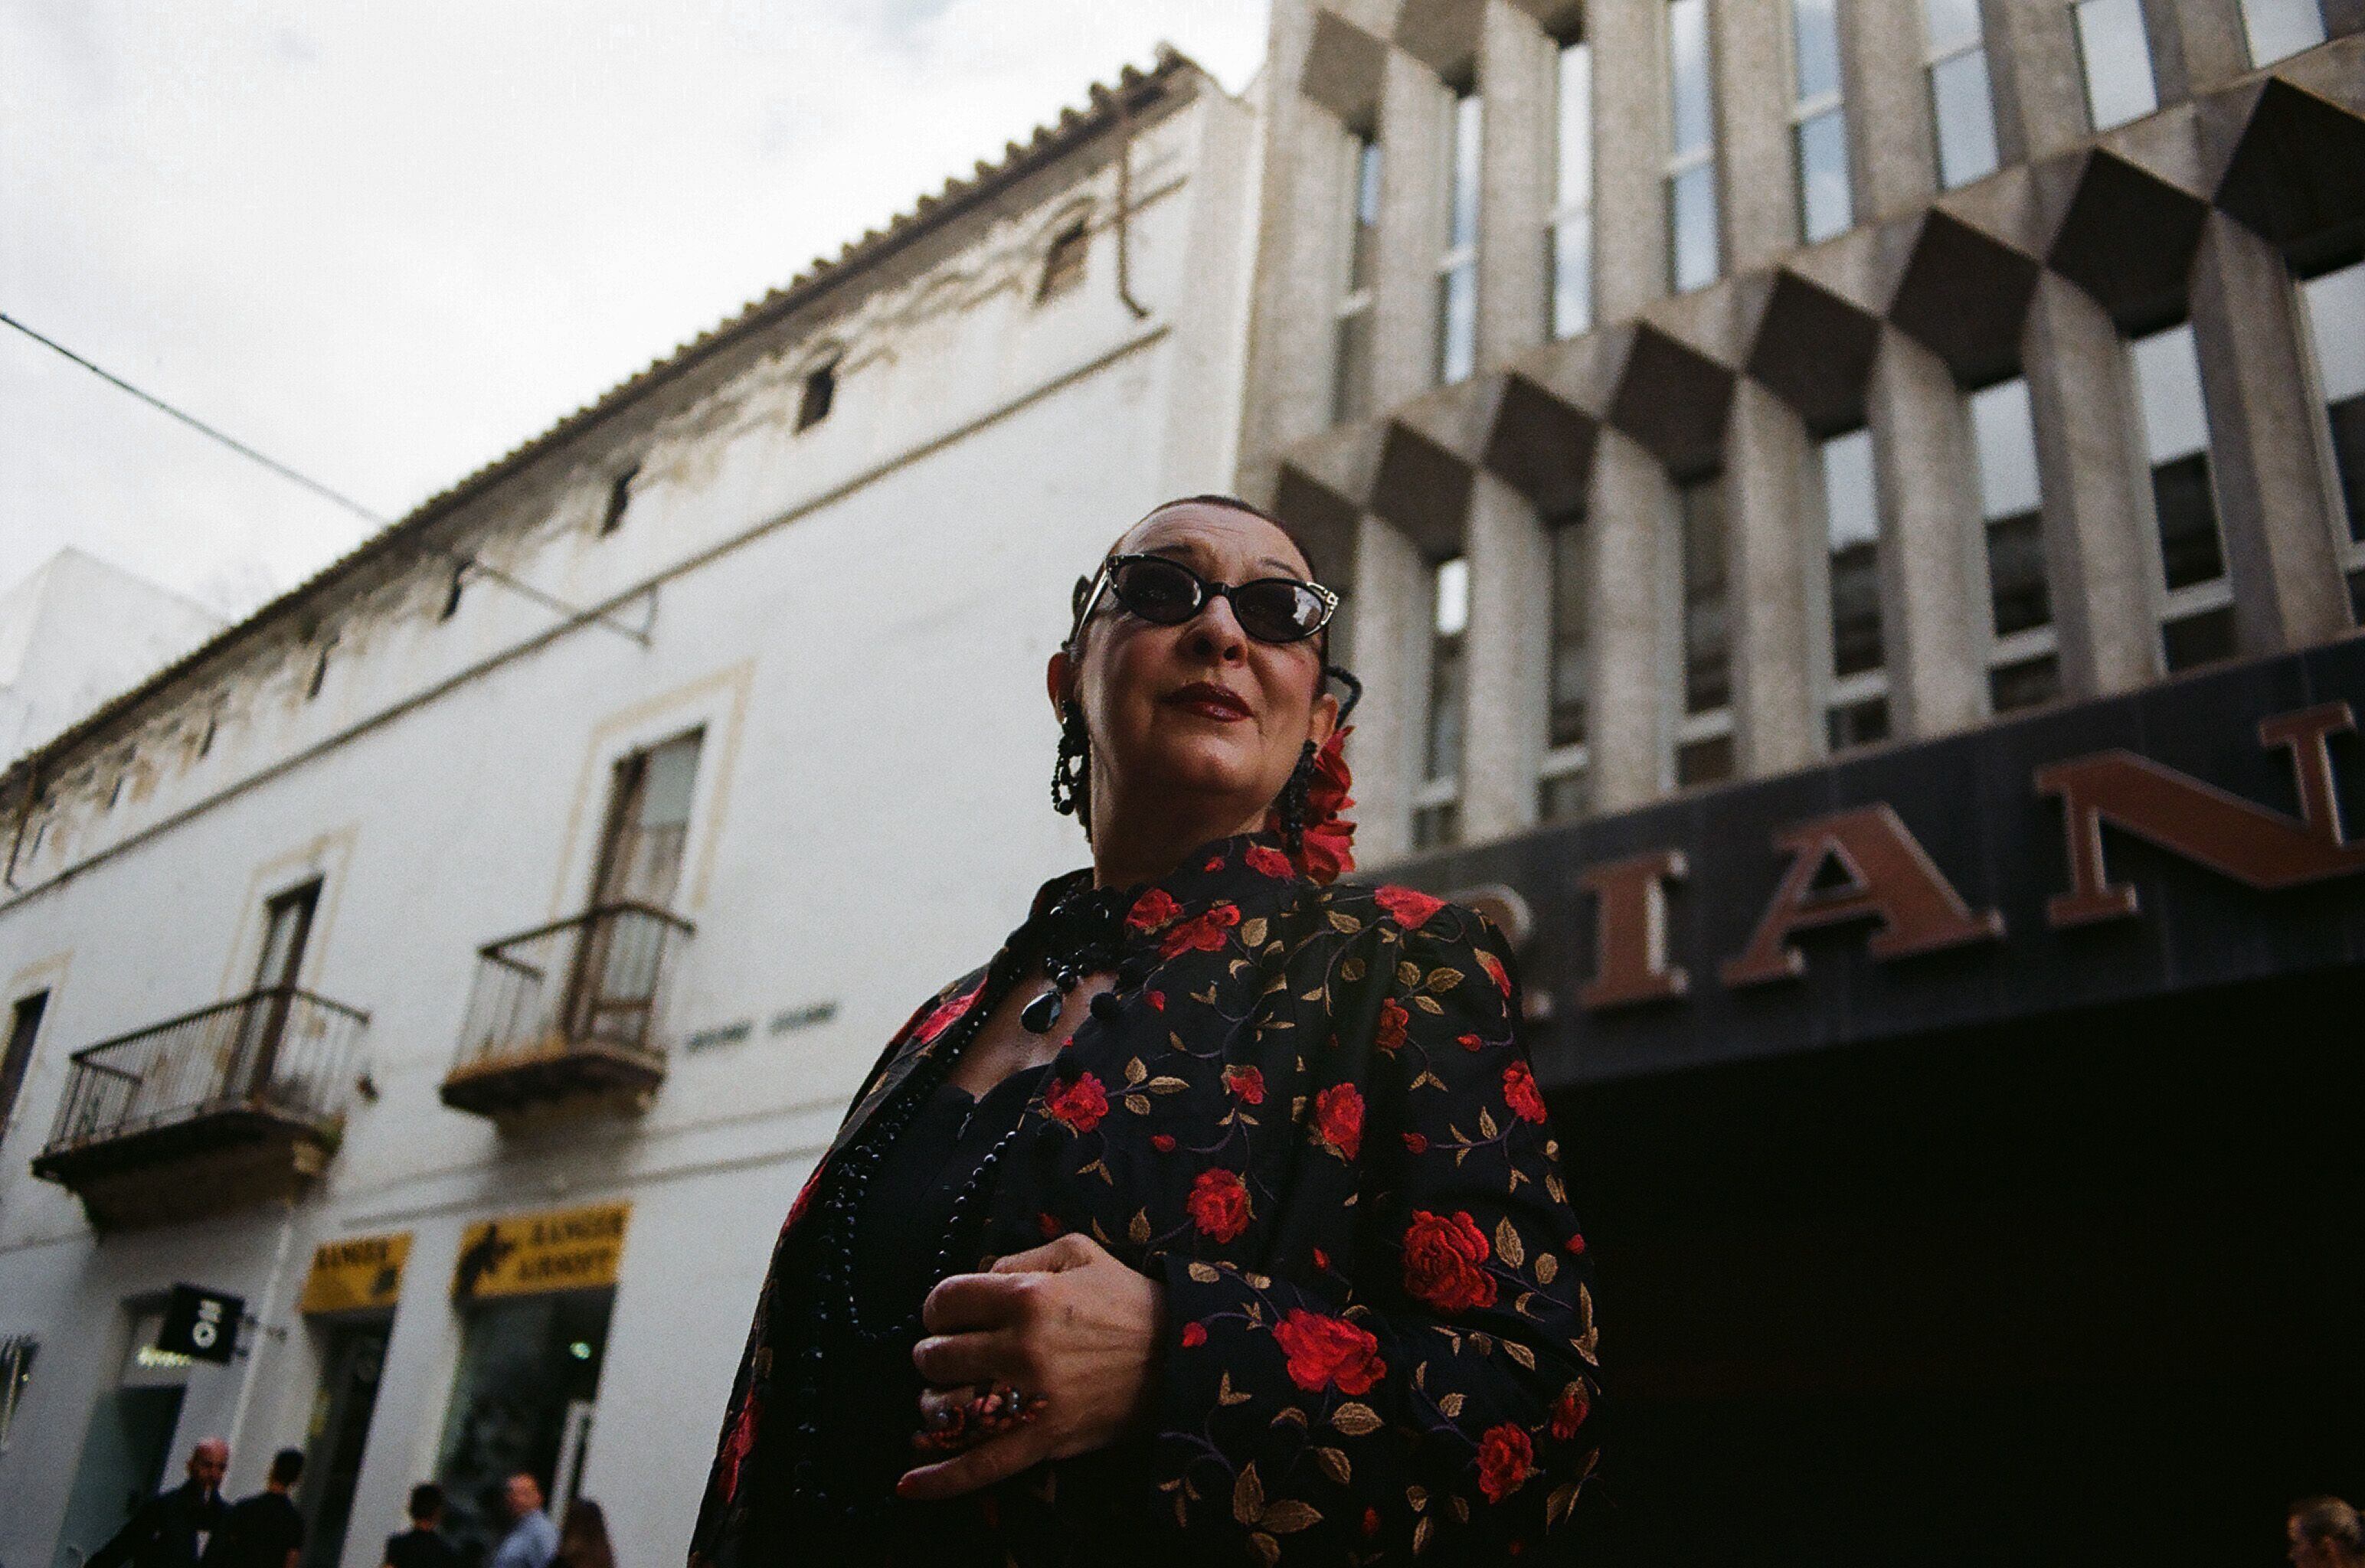 La cantante Martirio, icono de la modernidad desde los años 80, hace un cameo en la pieza, representando a las genuinas e inmortales artistas andaluzas.